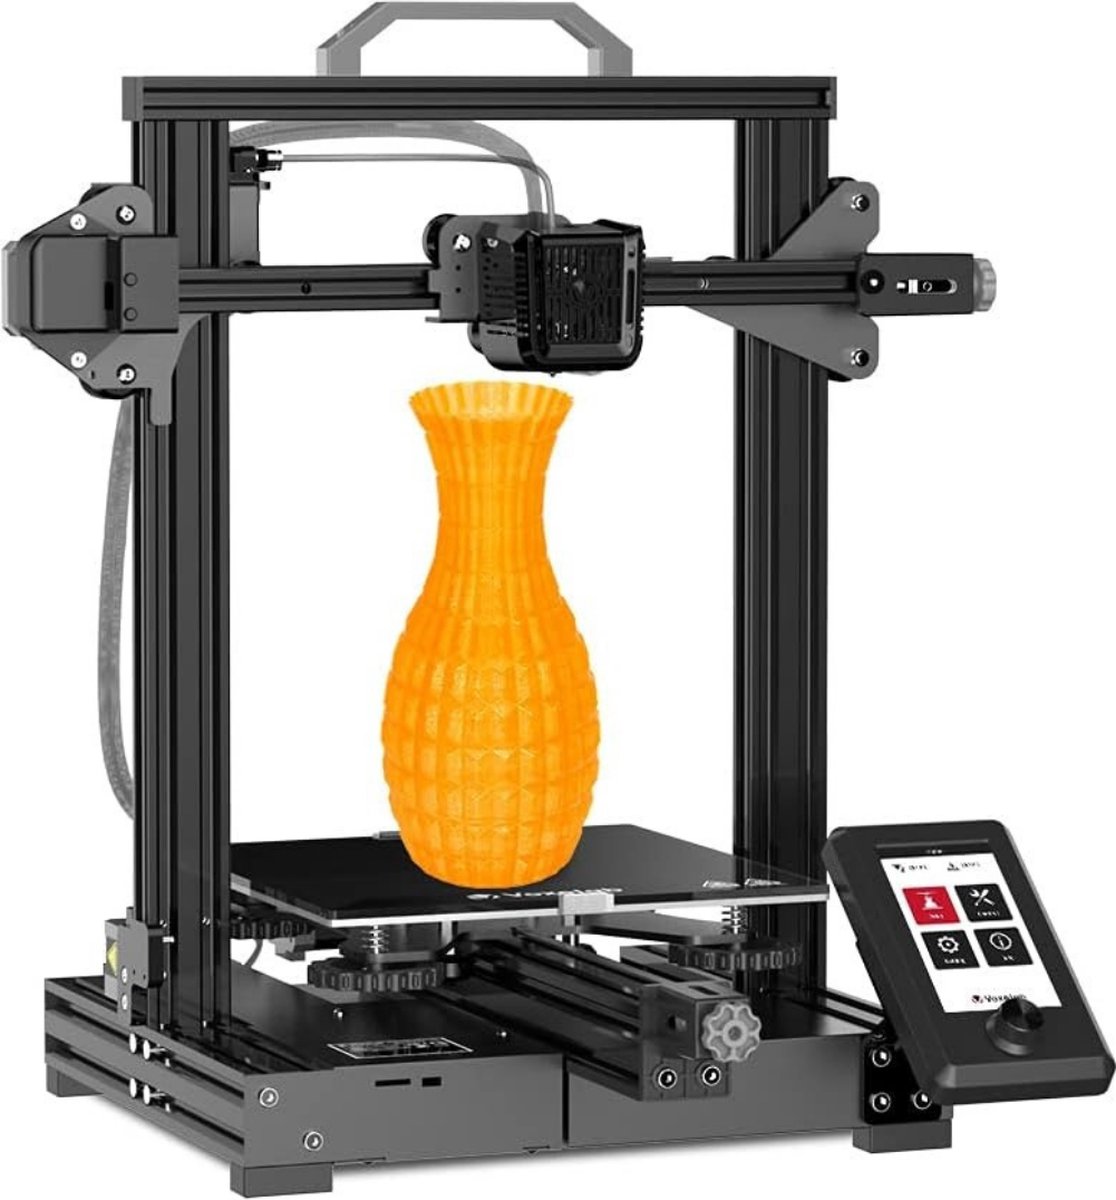 Voxelab 3D printer - Filamentdetectie - Met Afneembaar Glasplatform - Volledig Open Source - 0,2 mm Precisie - FDM - Zwart